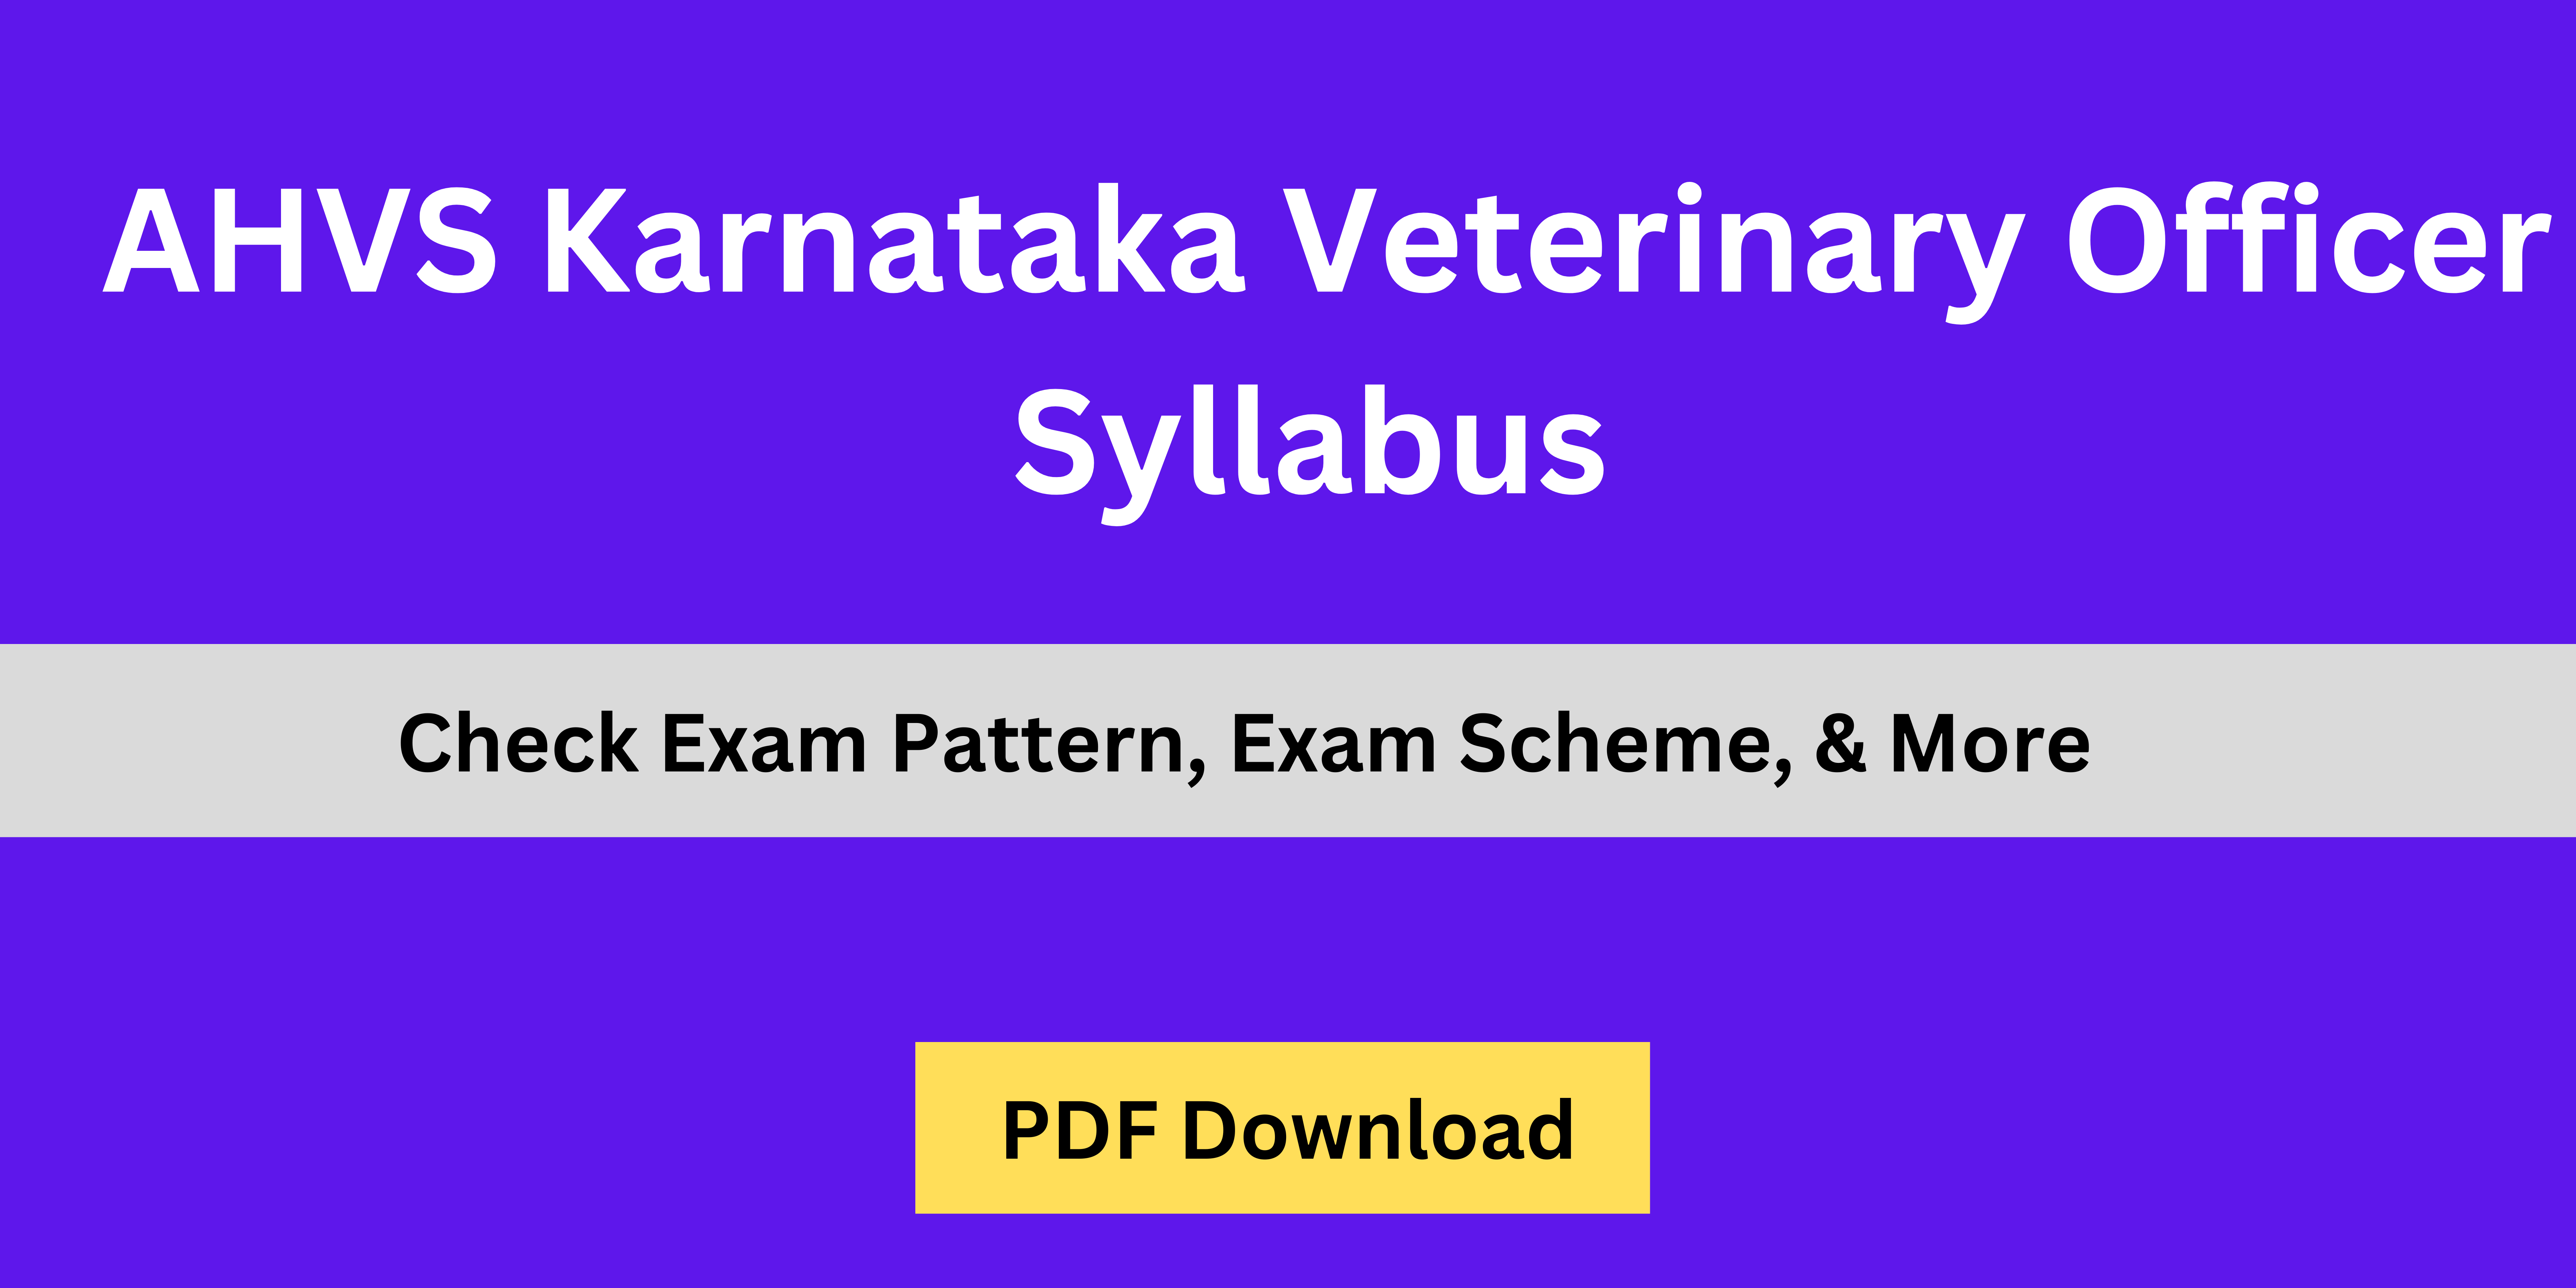 AHVS Karnataka Veterinary Officer Syllabus